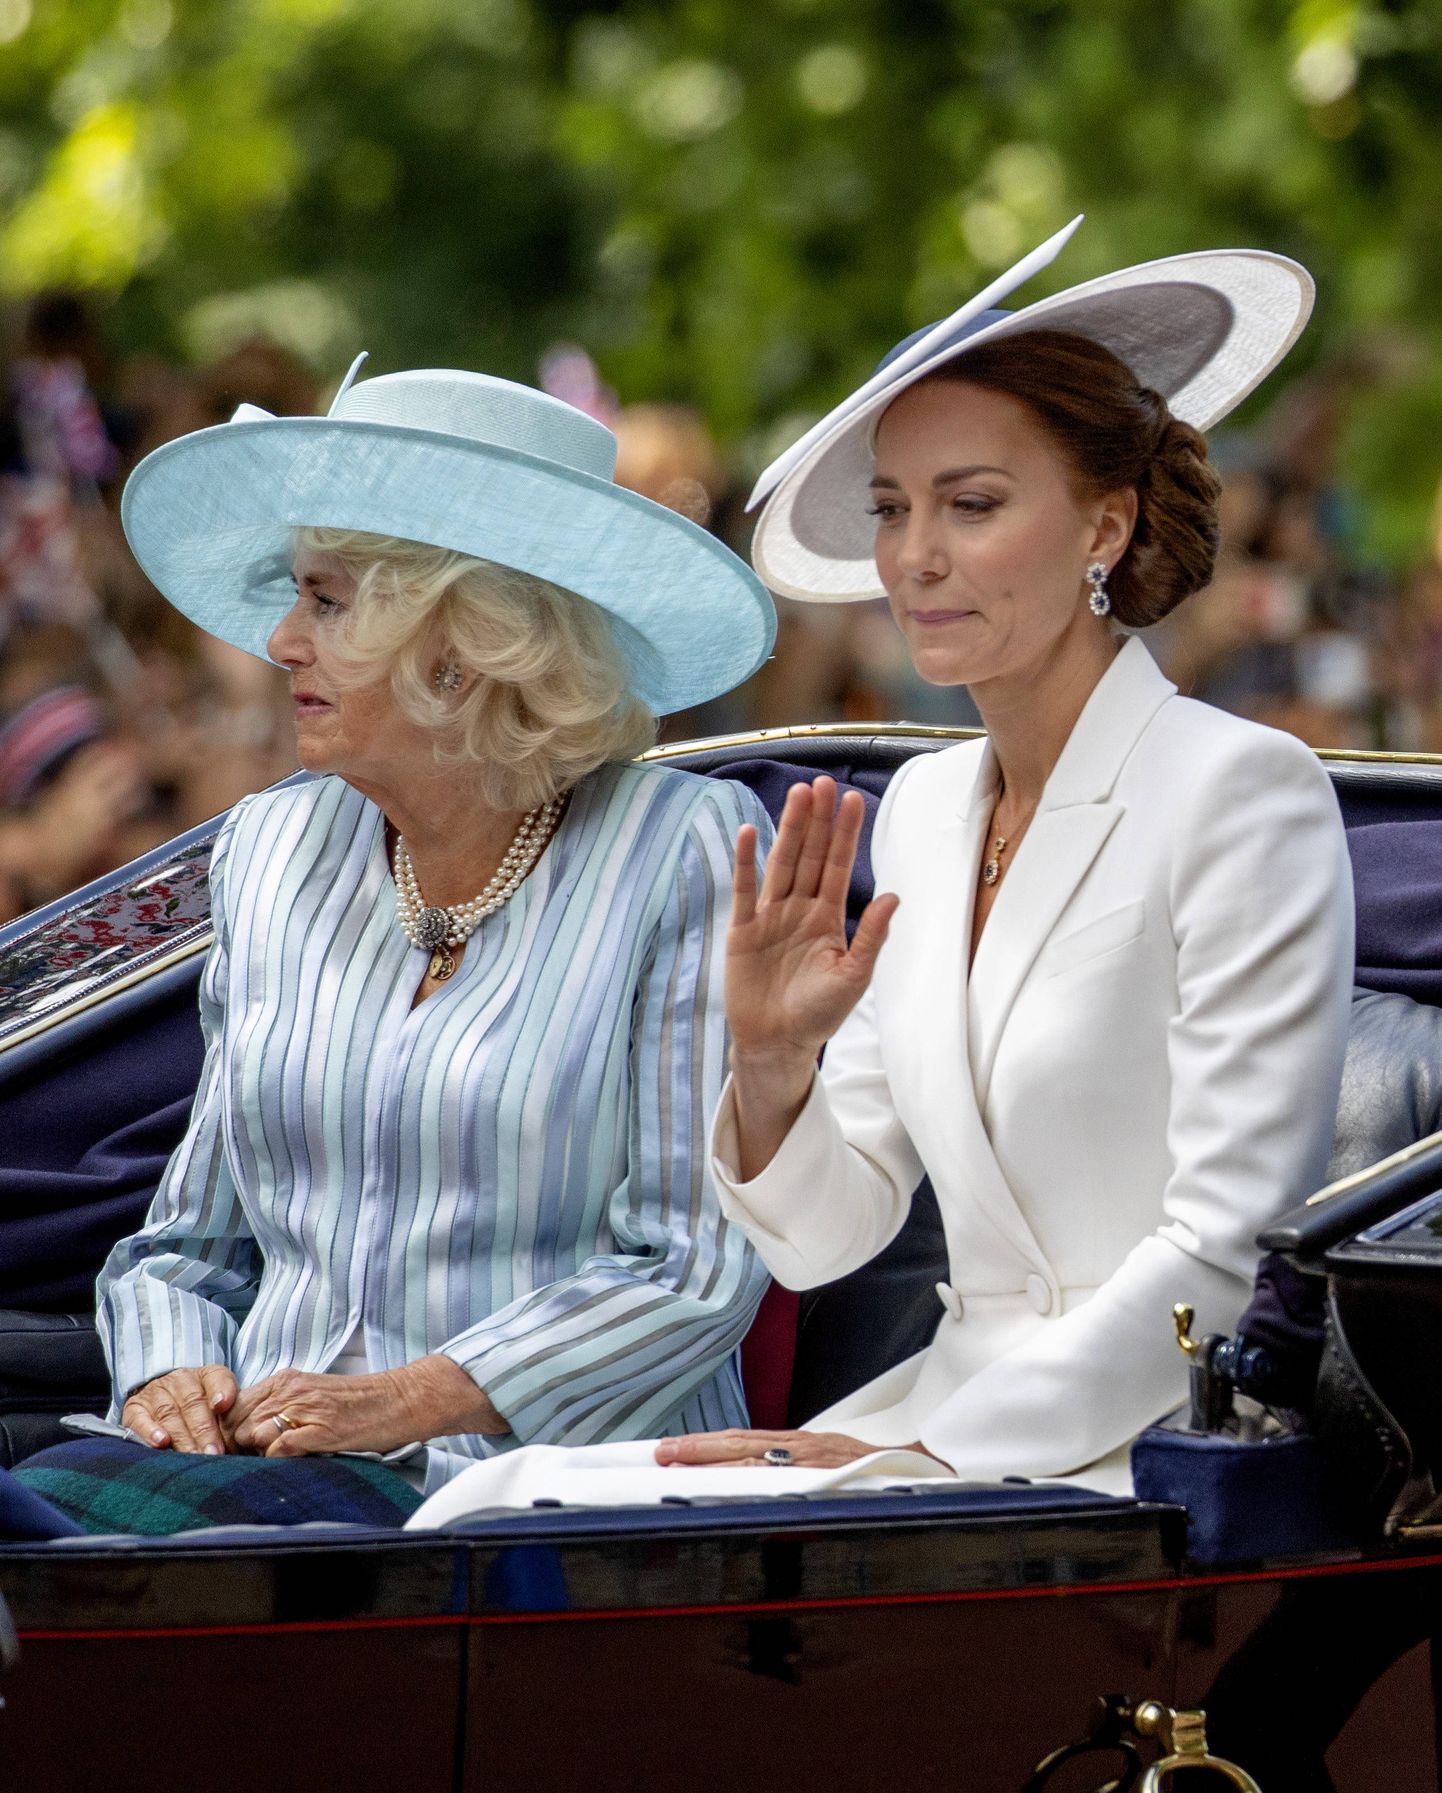 Praegune Briti kuninganna Camilla, kes oli siis veel Cornwalli hertsoginna, ja Walesi printsess Catherine, kes oli Cambridge'i hertsoginna, 2. juunil 2022, kui tähistati kuninganna Elizabeth II 70. troonijuubelit.